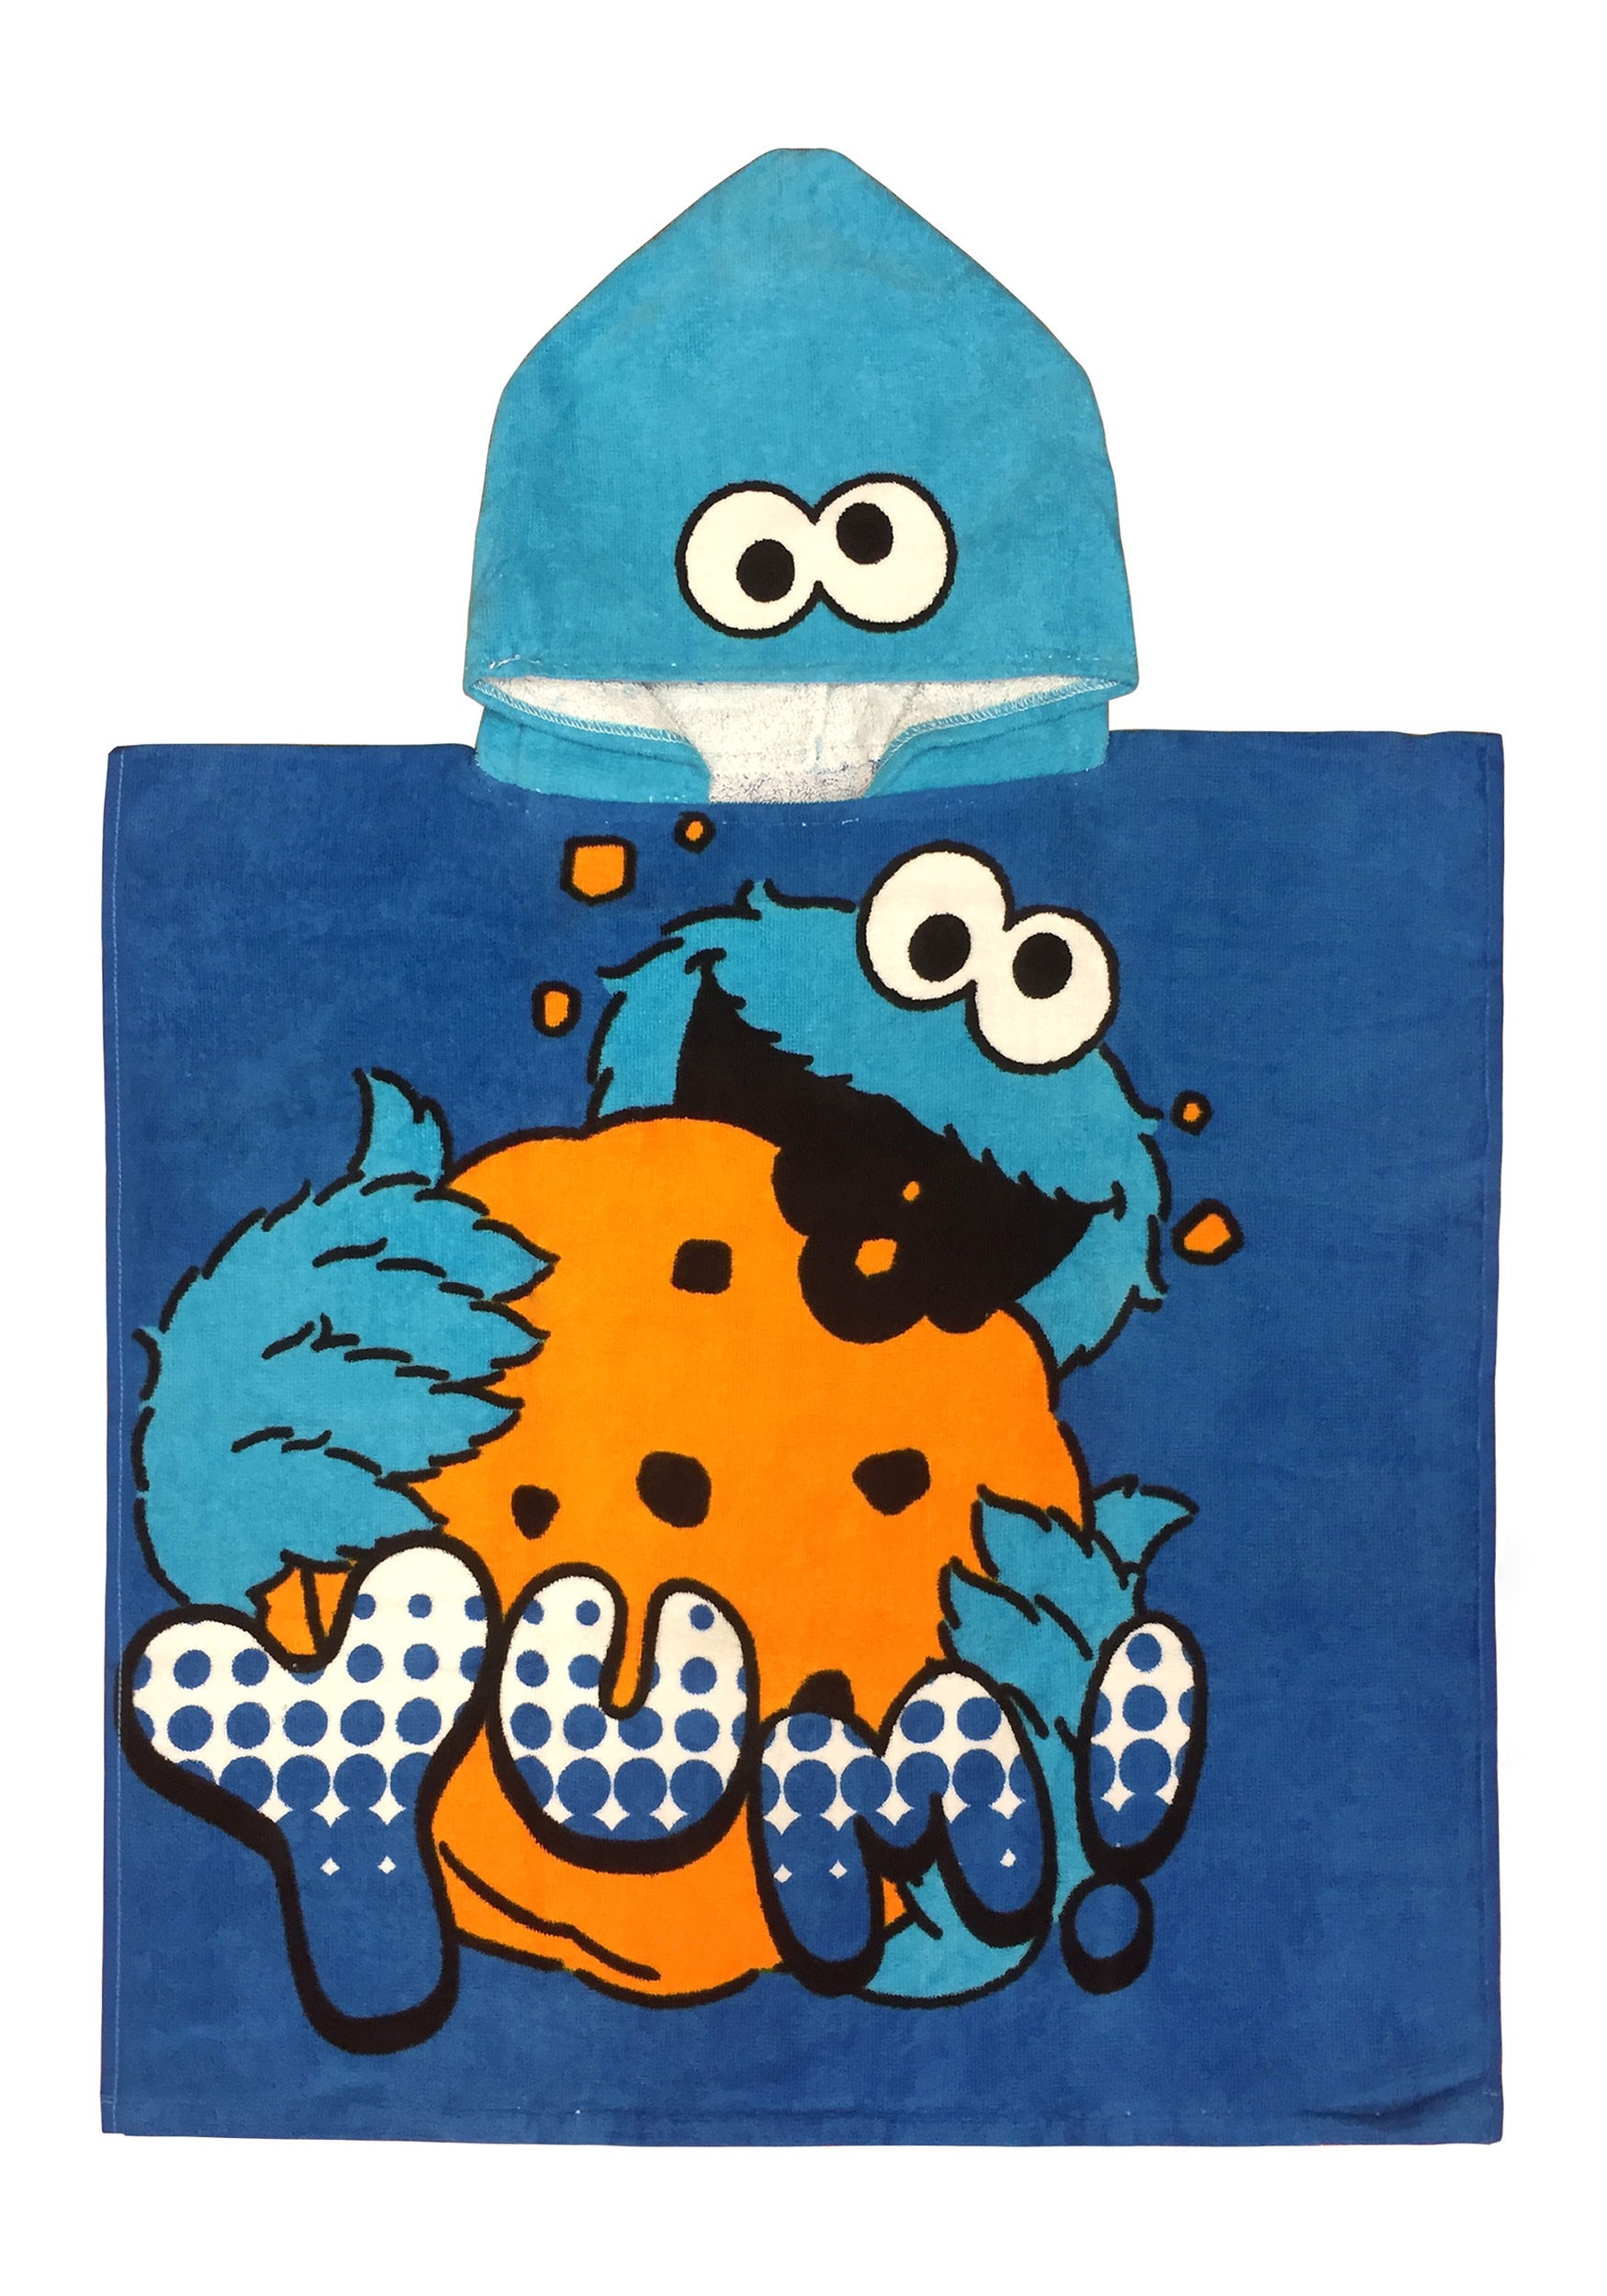 Hooded Sesame Street Cookie Monster Towel